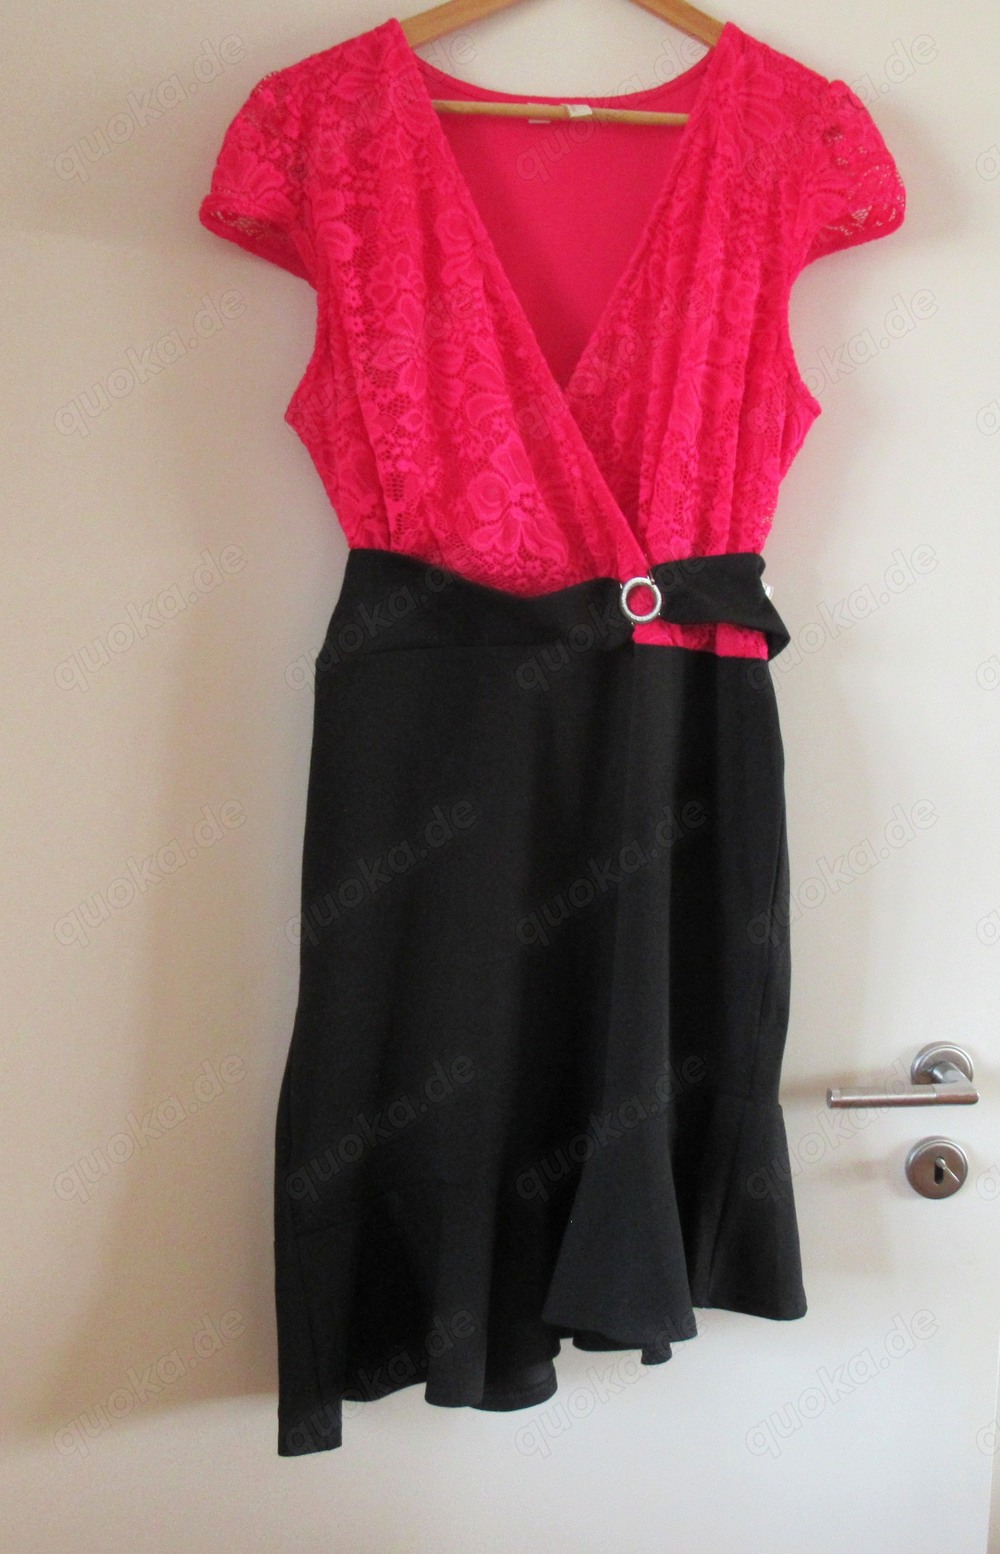 NEUES Kleid kurzärmelig oben pink unten Schwarz Größe 44   46